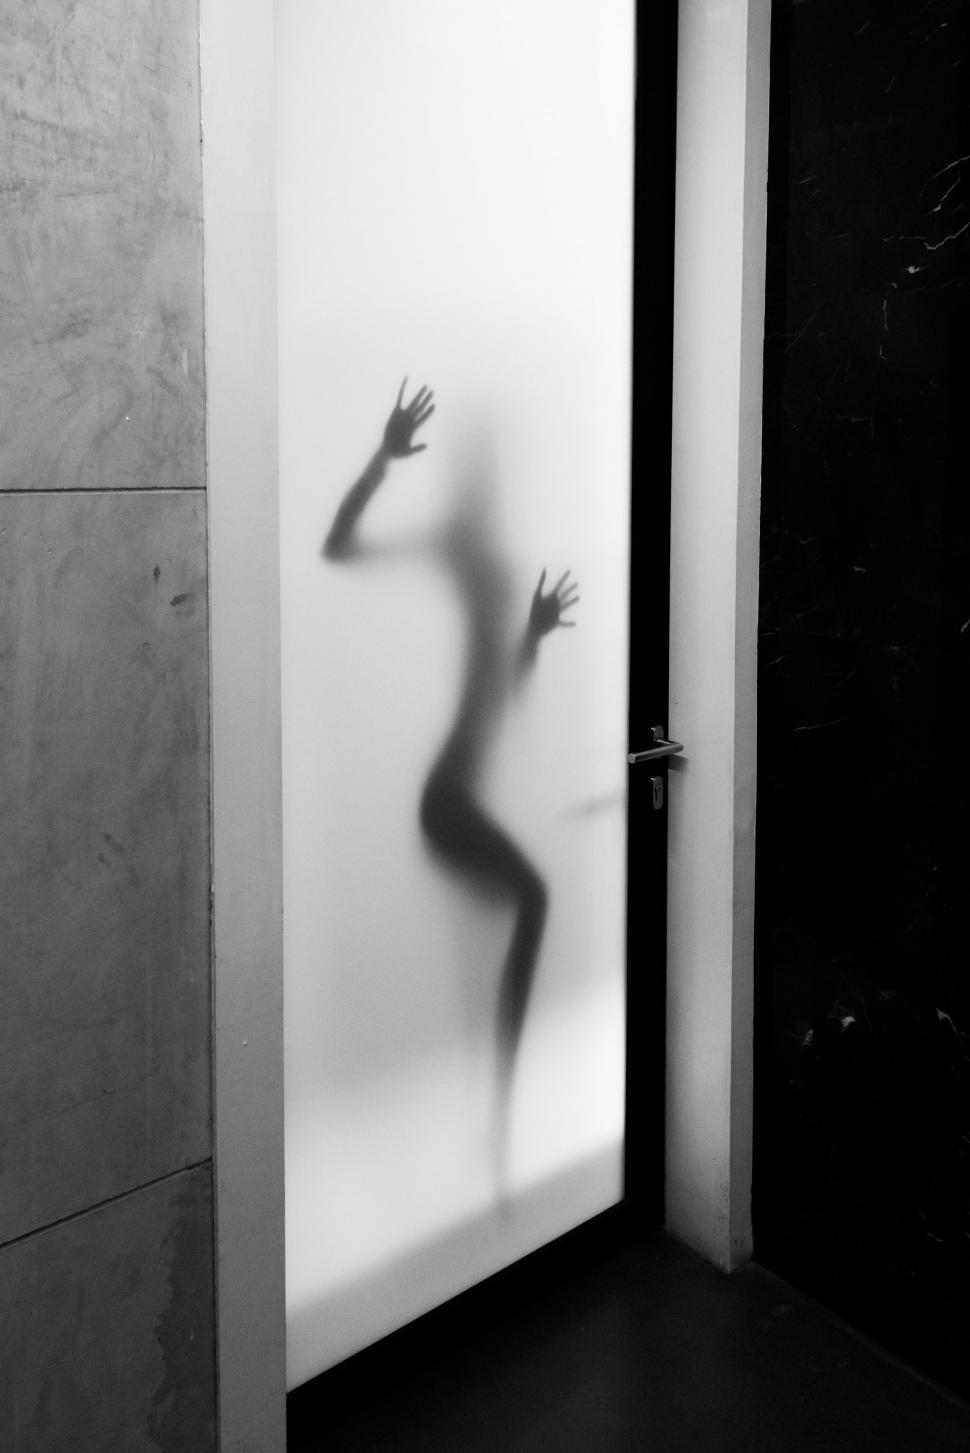 Free Image of Woman hands behind glass door  